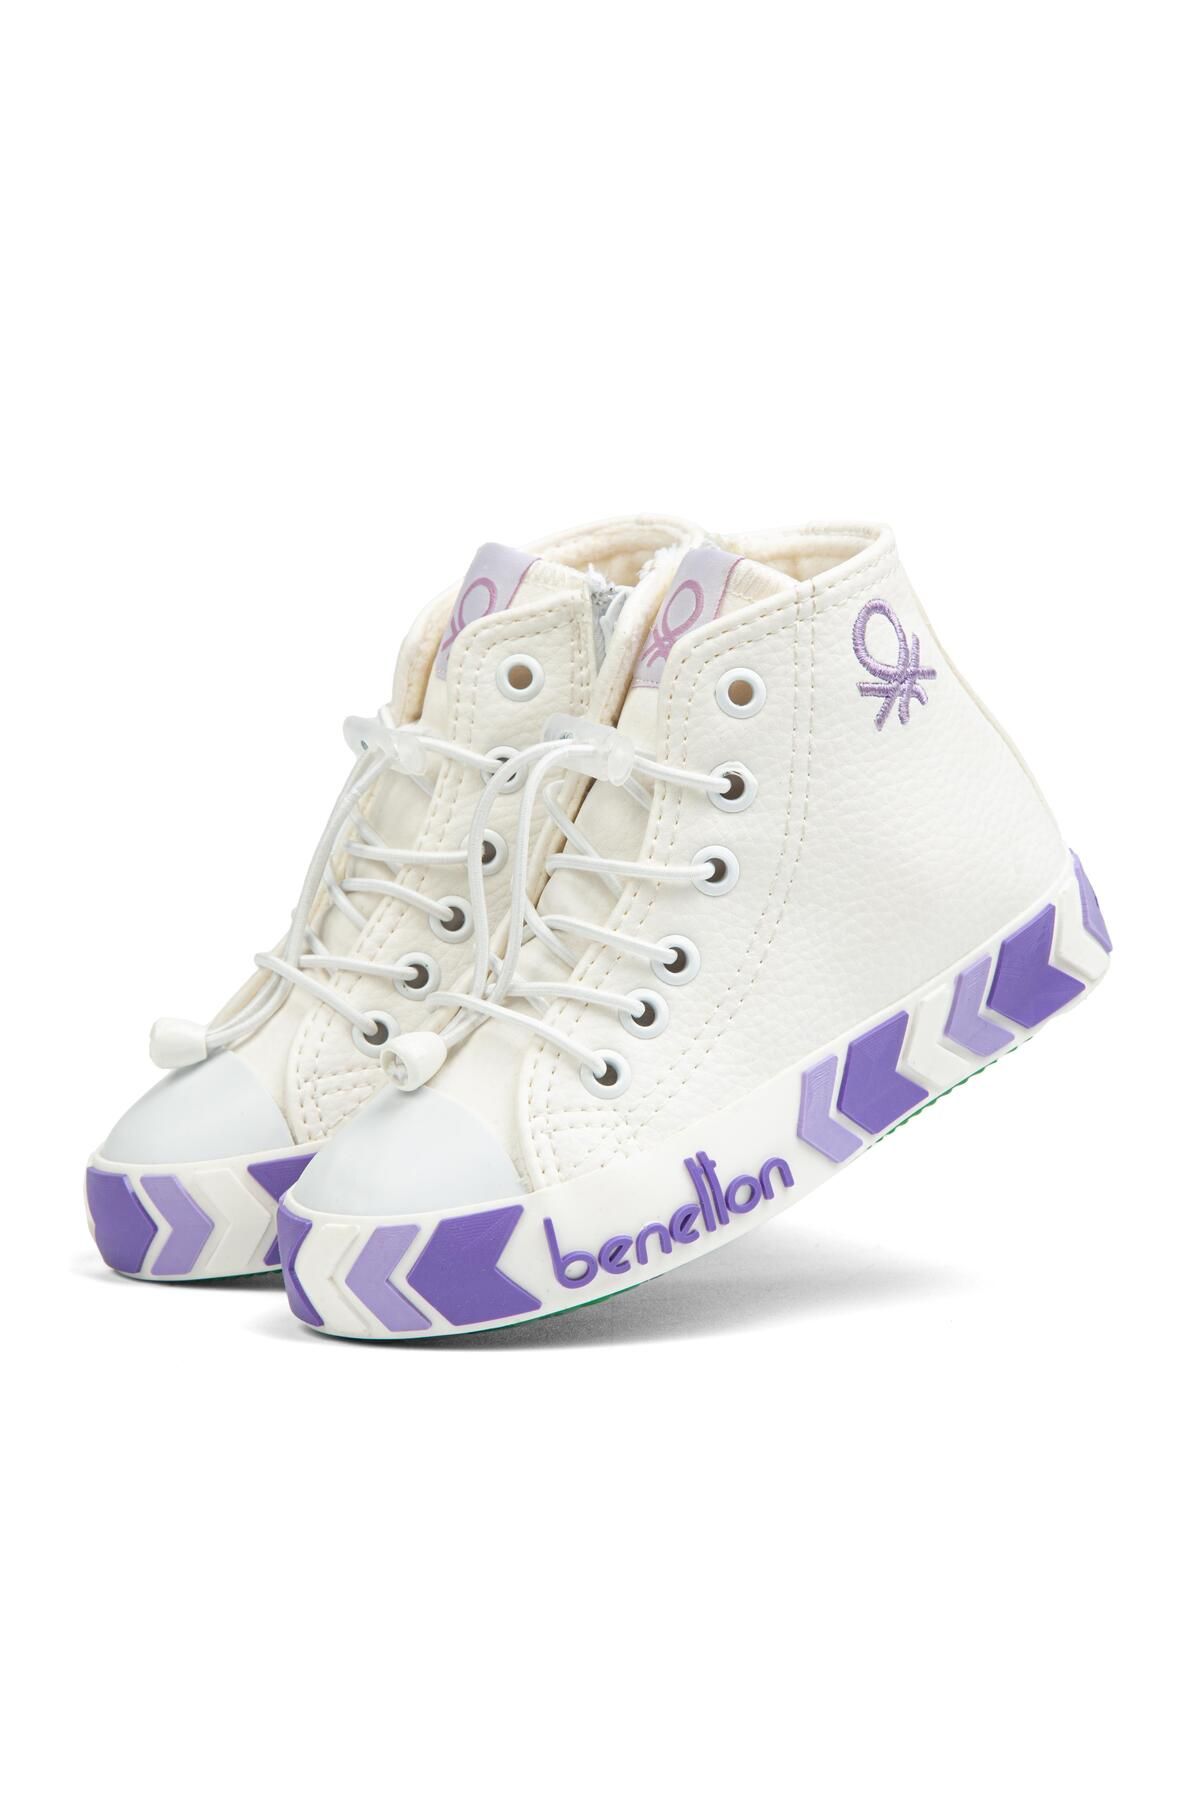 Benetton ® | BN-30775 - Beyaz Lila - Çocuk Spor Ayakkabı